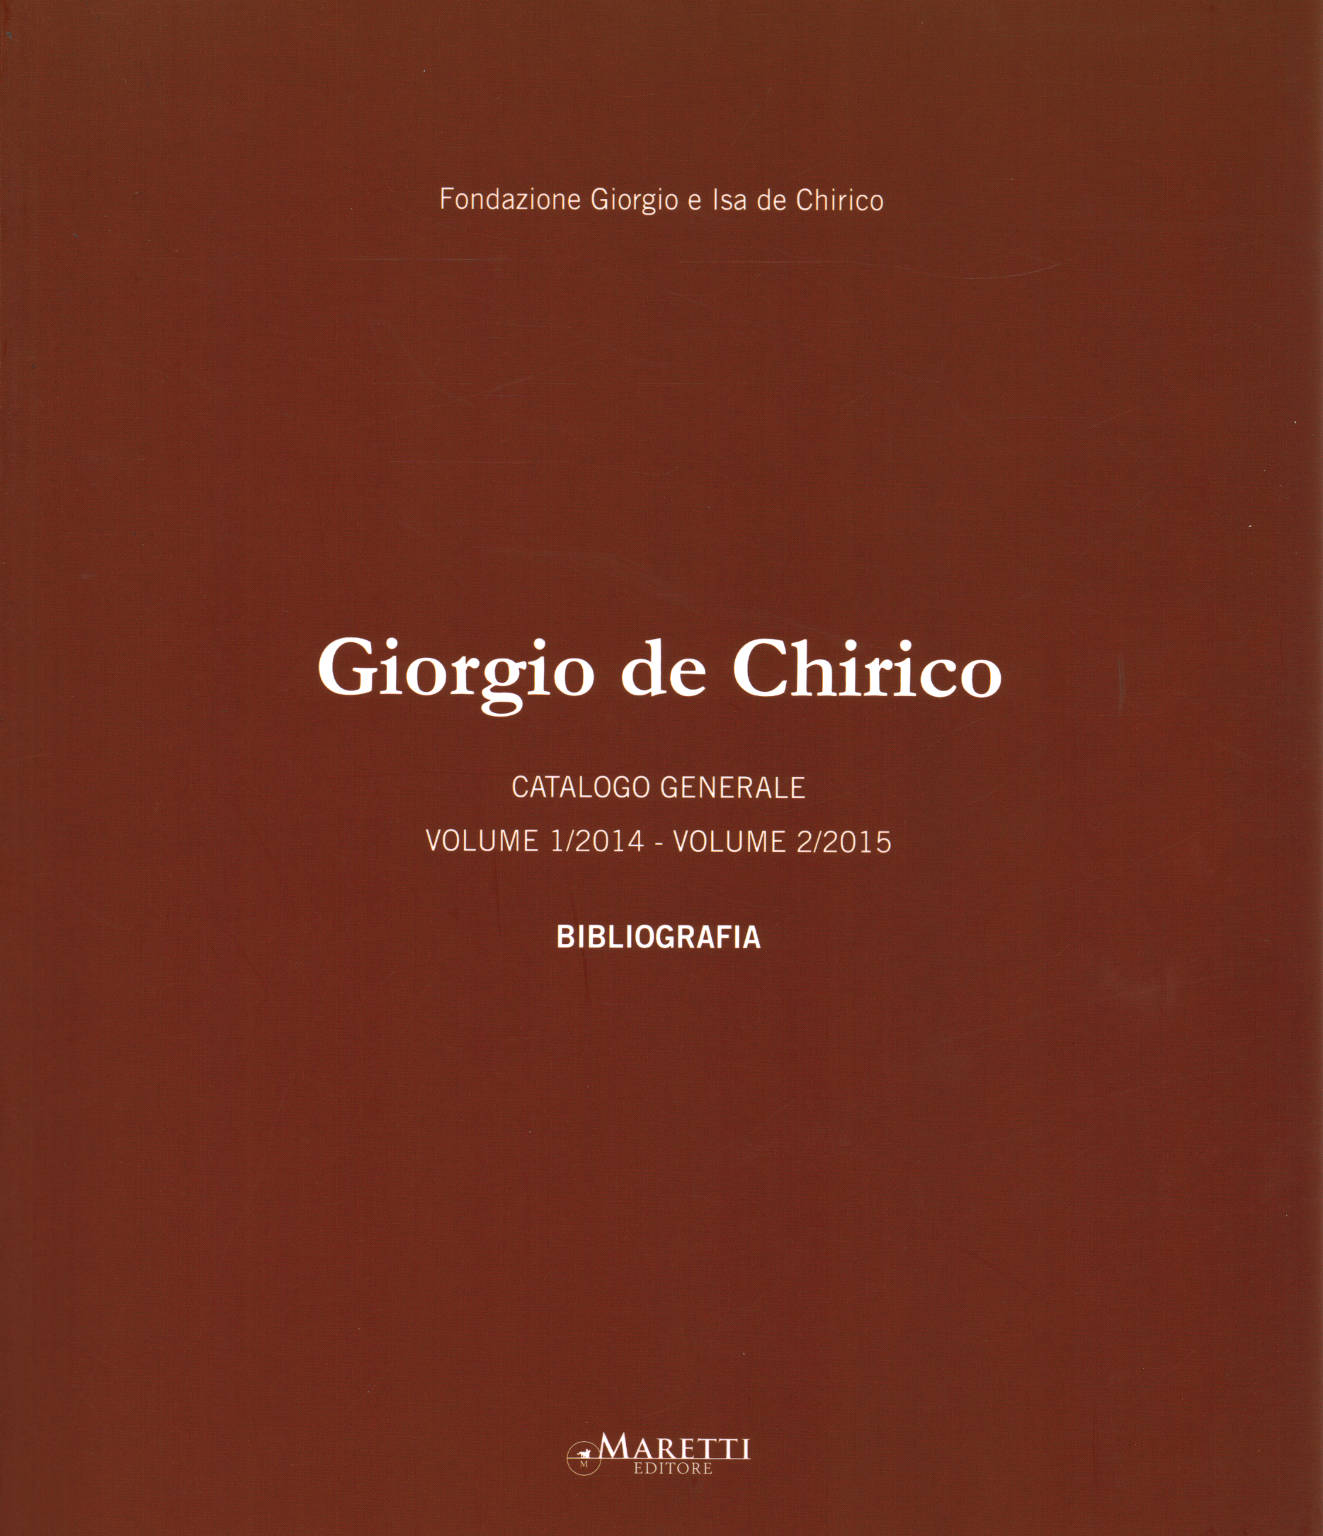 Giorgio de Chirico Bibliografia, Fondazione Giorgio e Isa de Chirico